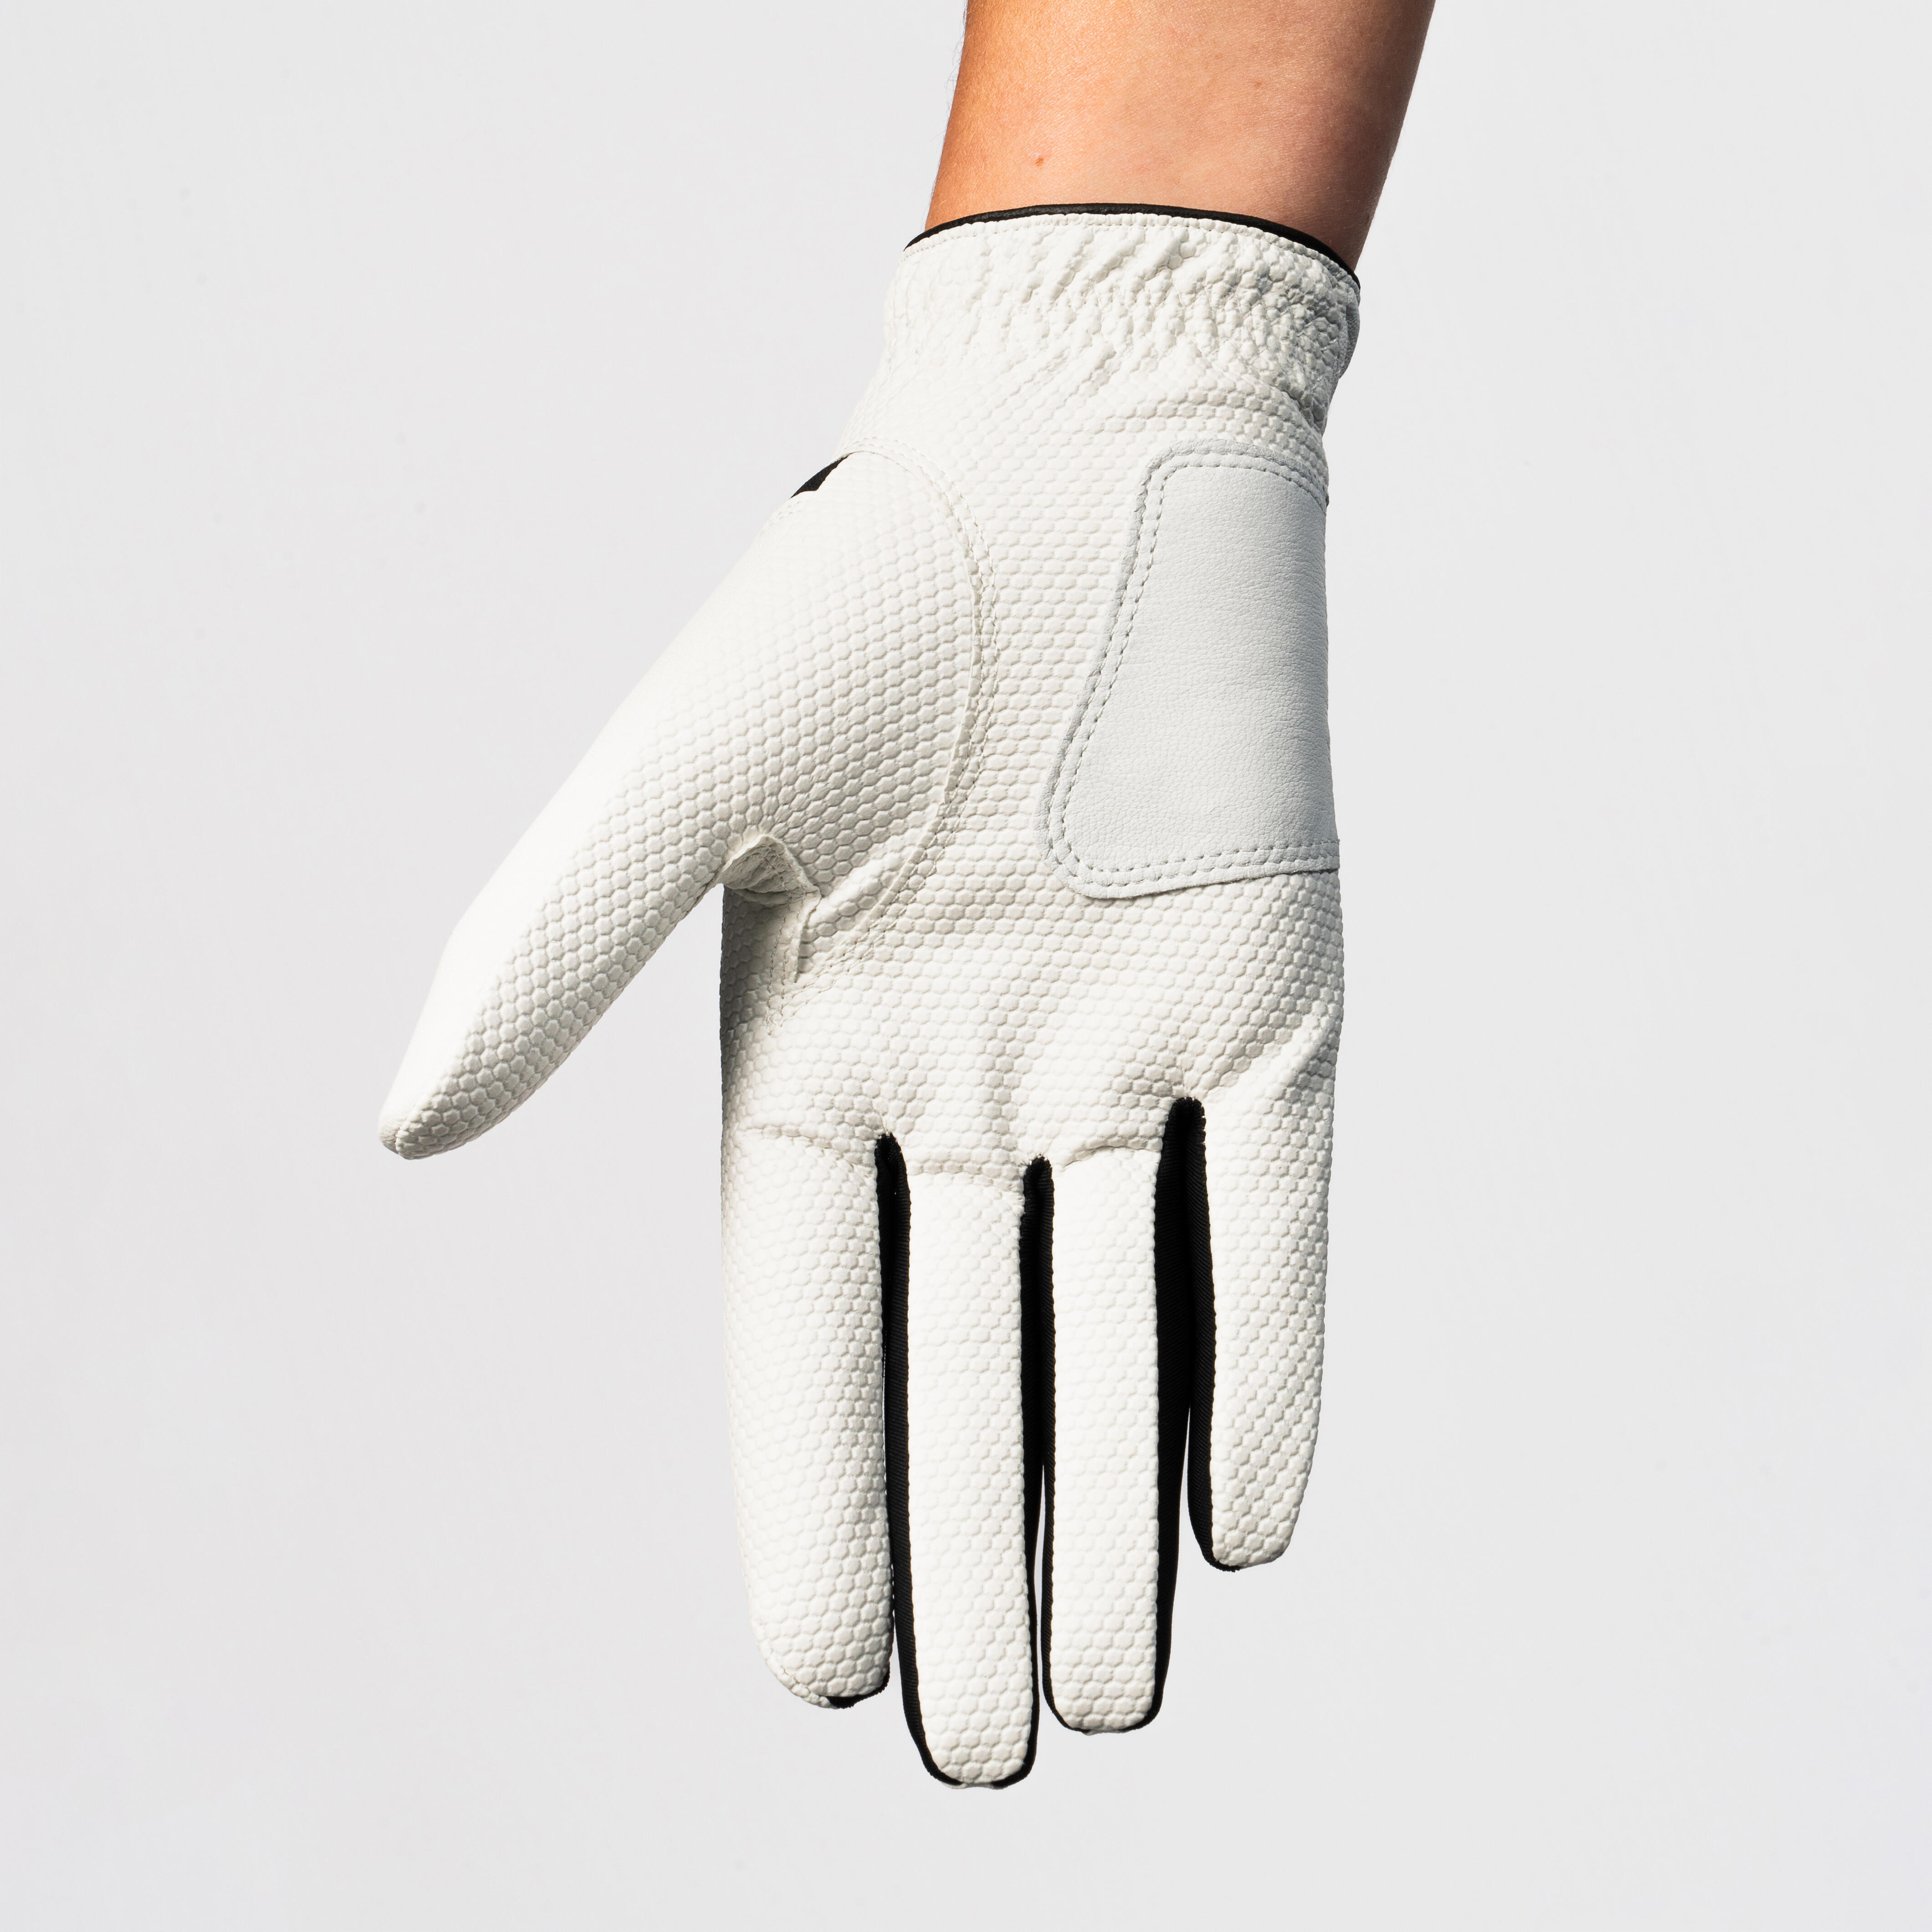 Women’s LH Golf Glove - Resistance 100 White/Black - INESIS